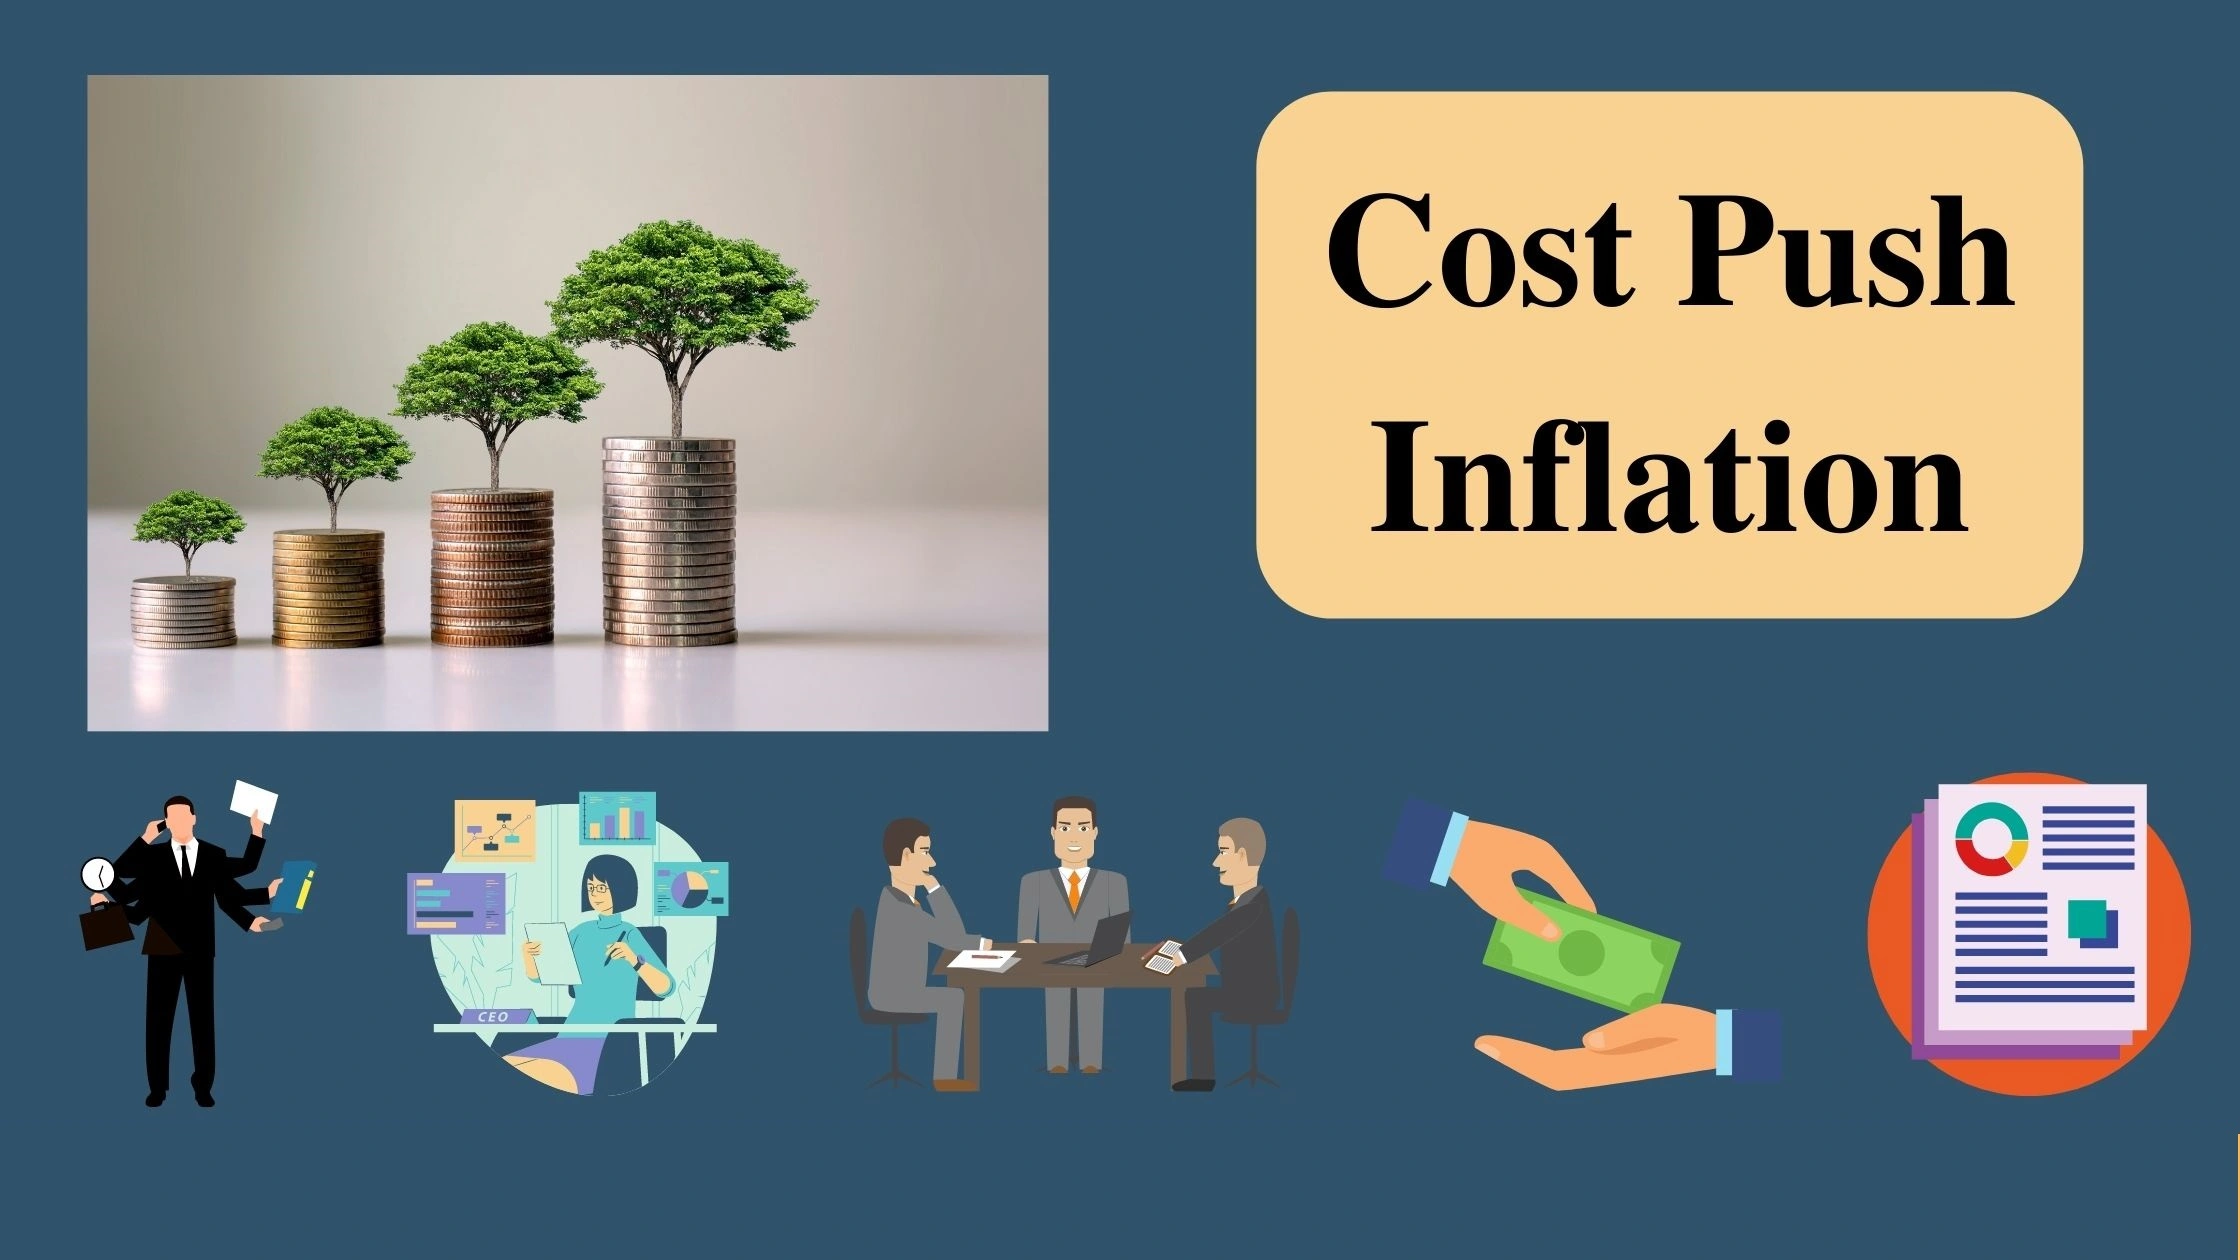 تورم فشار هزینه Cost Push Inflation